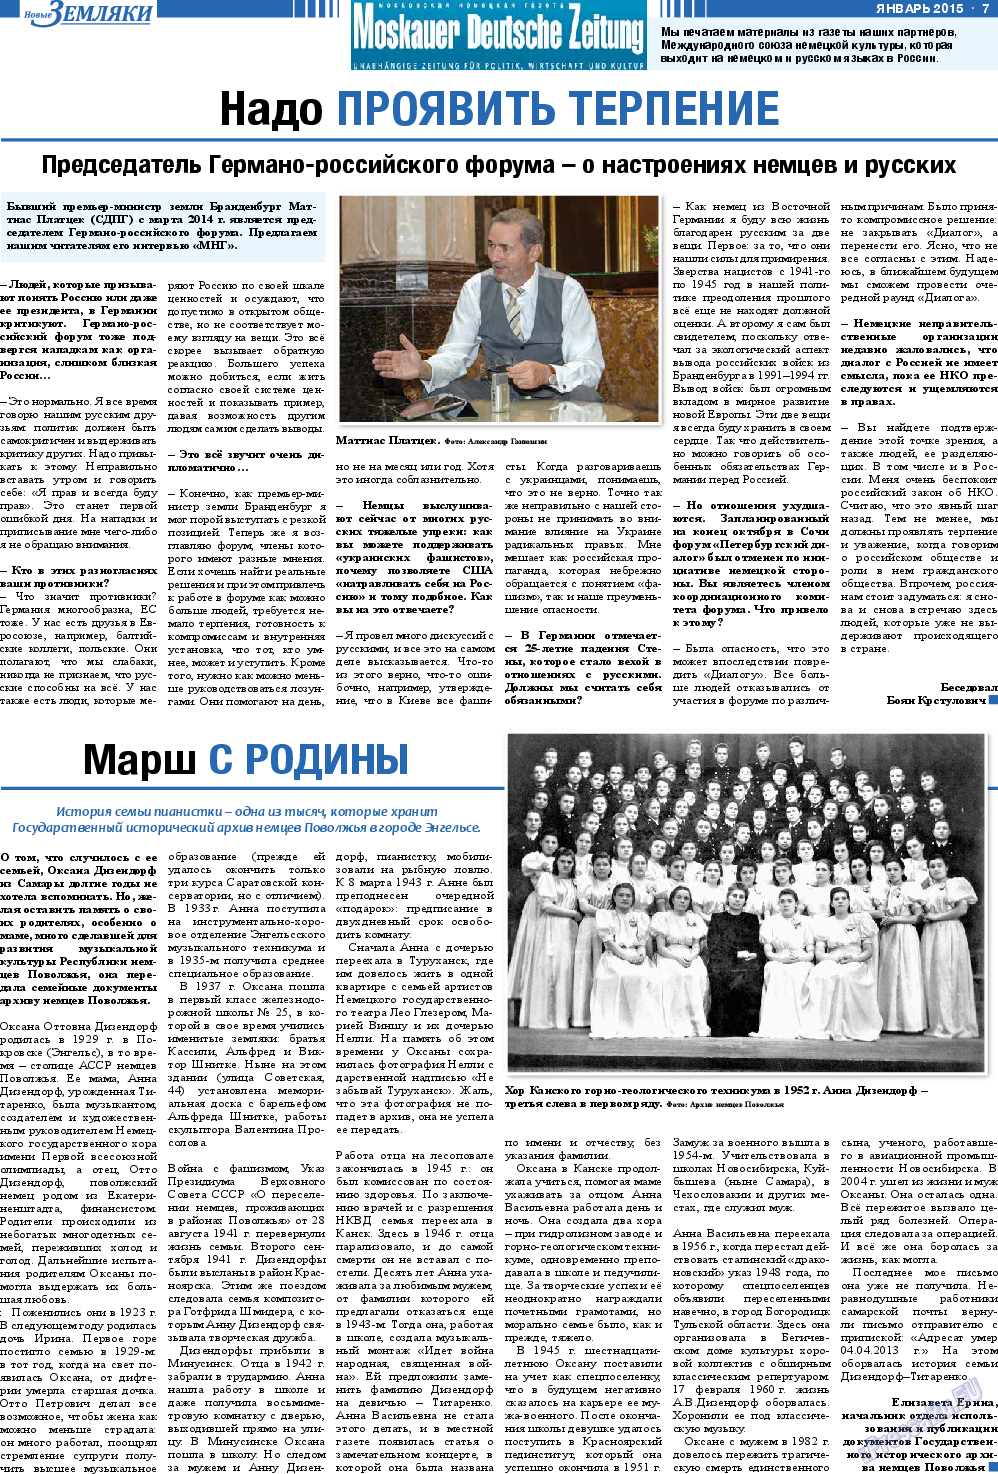 Новые Земляки, газета. 2015 №1 стр.7